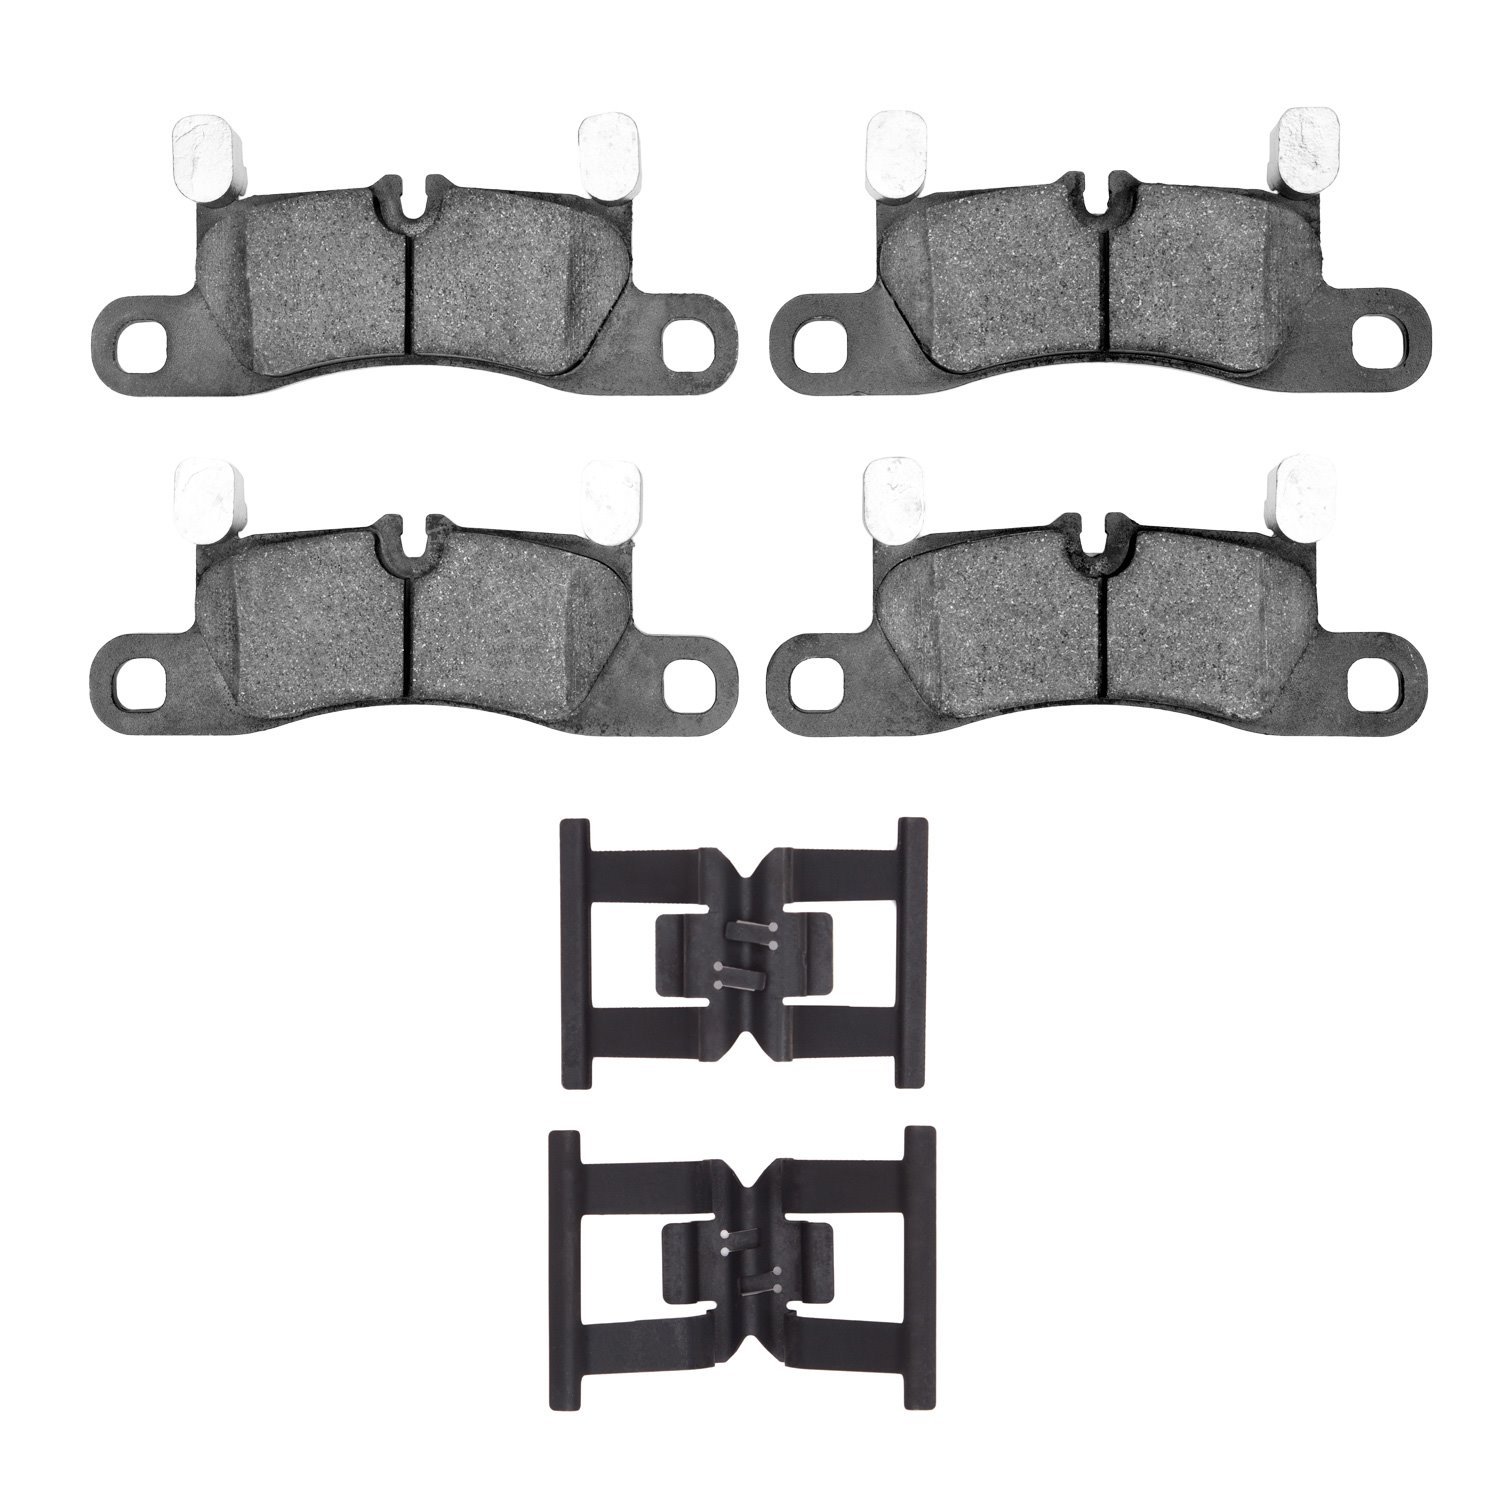 1552-1453-01 5000 Advanced Low-Metallic Brake Pads & Hardware Kit, 2011-2014 Porsche, Position: Rear